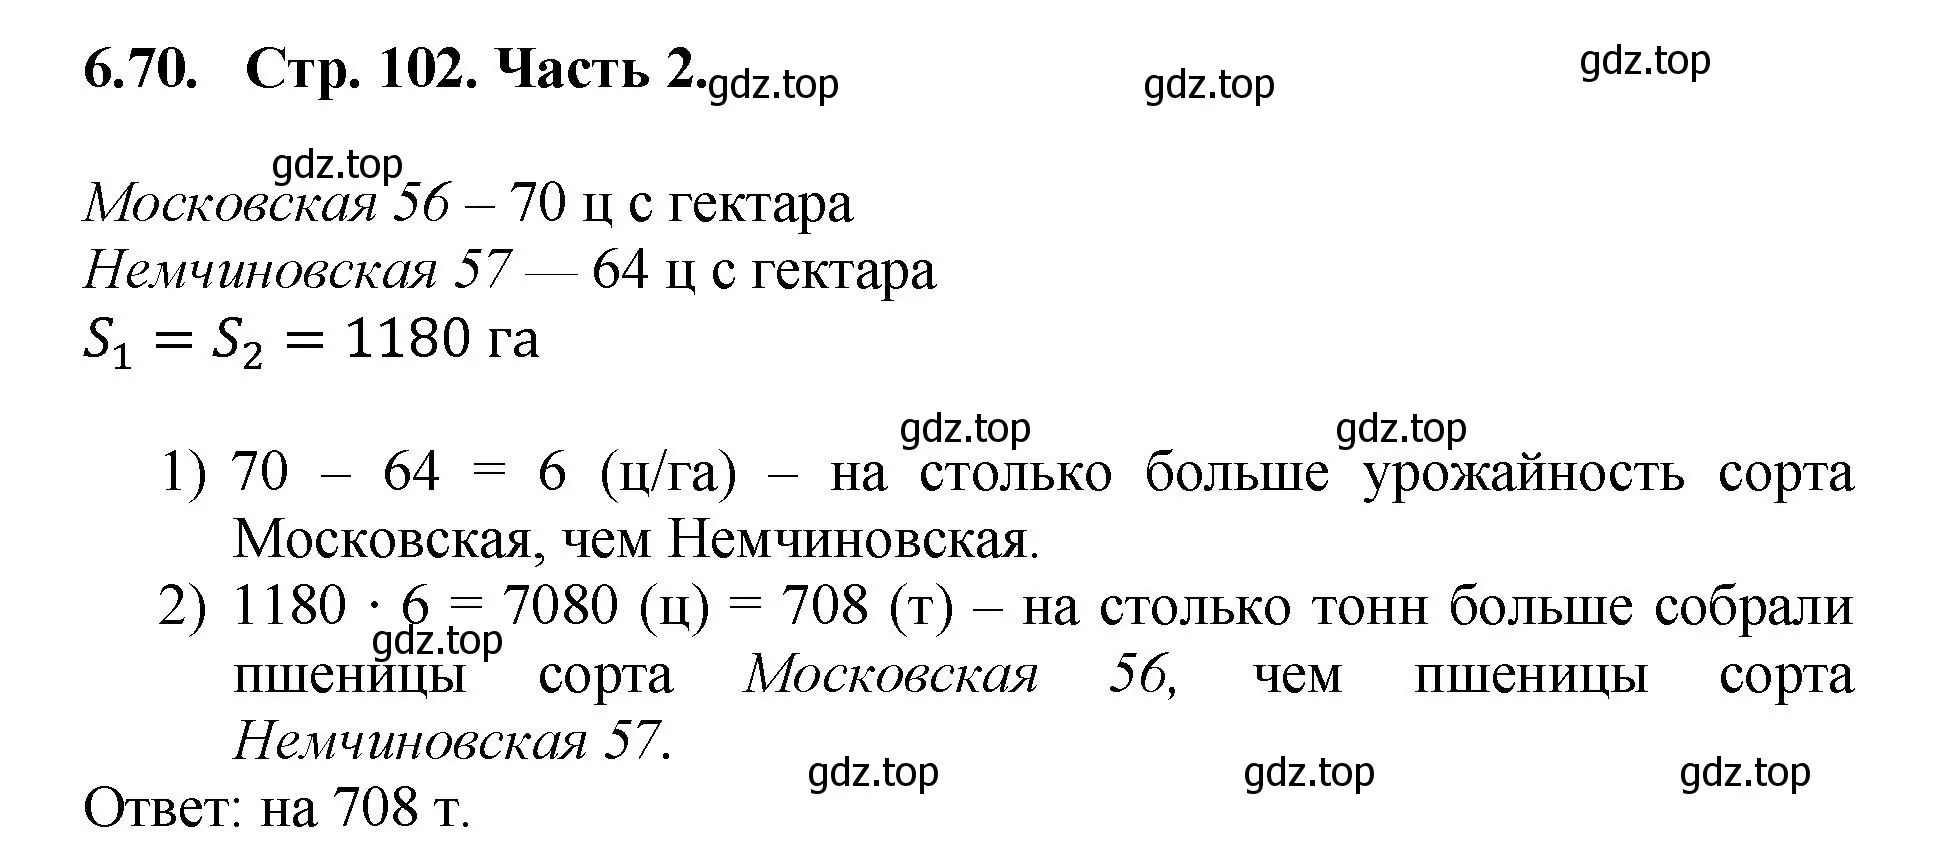 Решение номер 6.70 (страница 102) гдз по математике 5 класс Виленкин, Жохов, учебник 2 часть